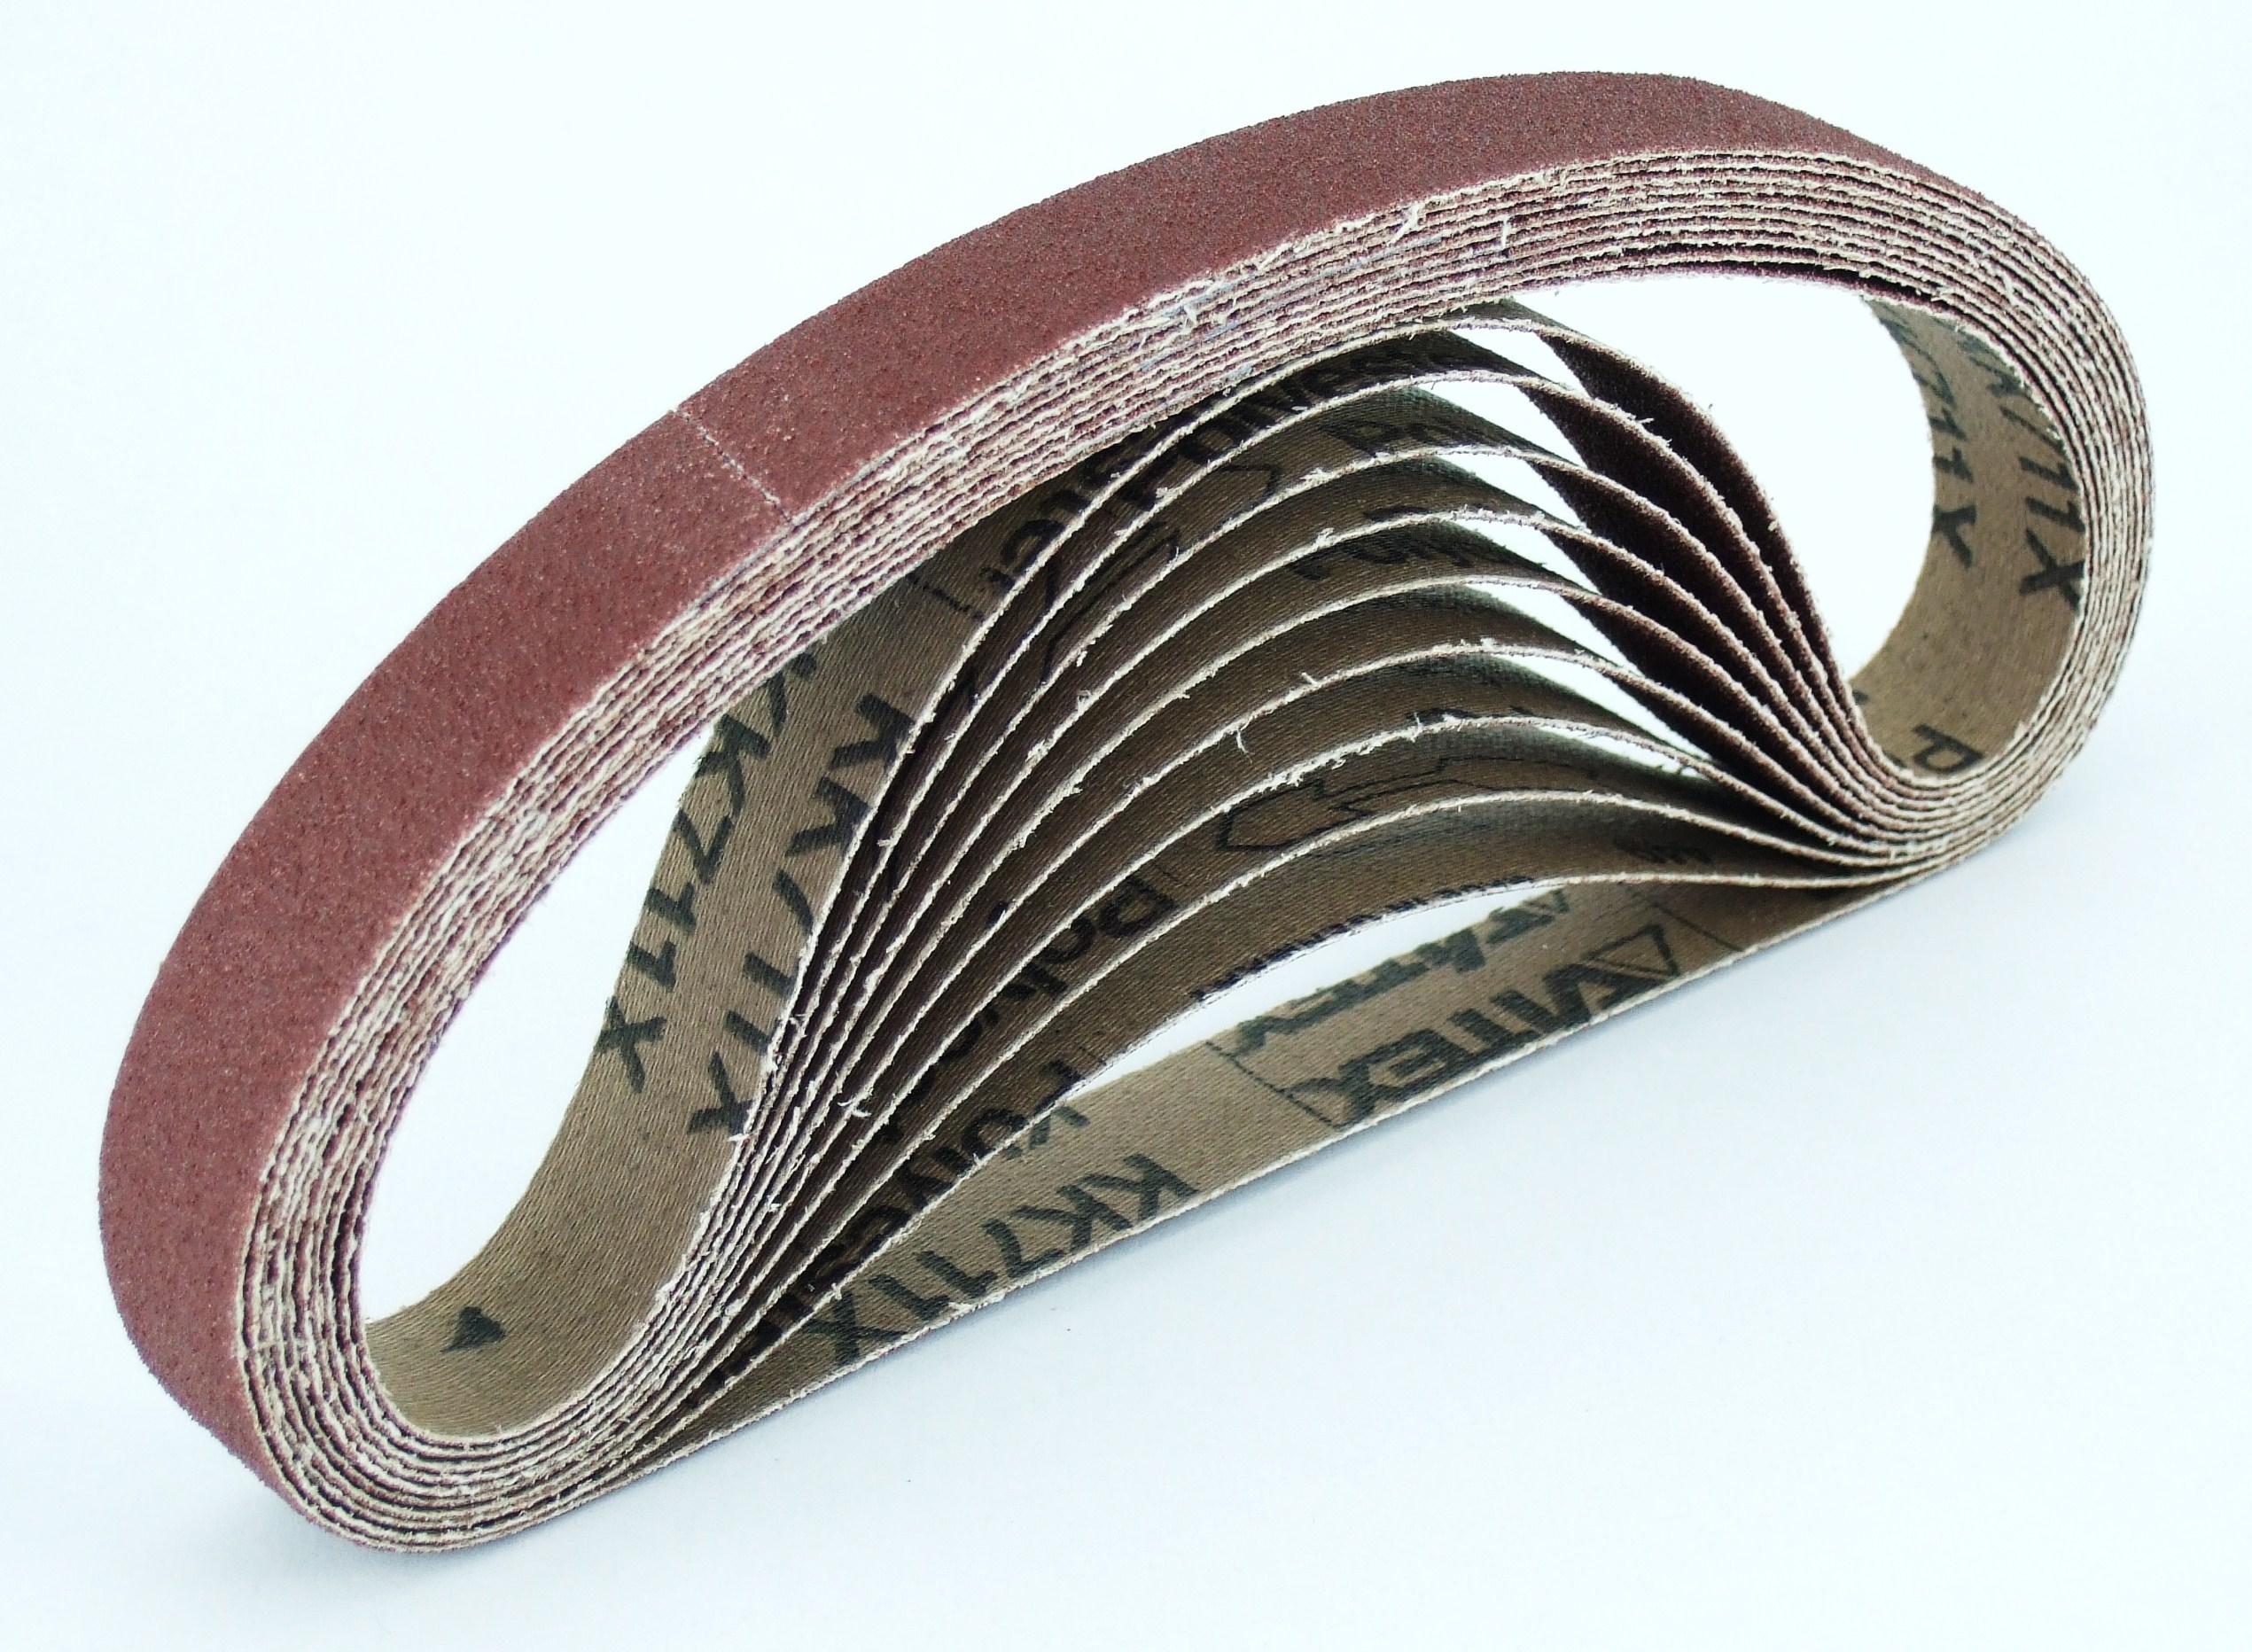 Structure and use of polishing abrasive belt